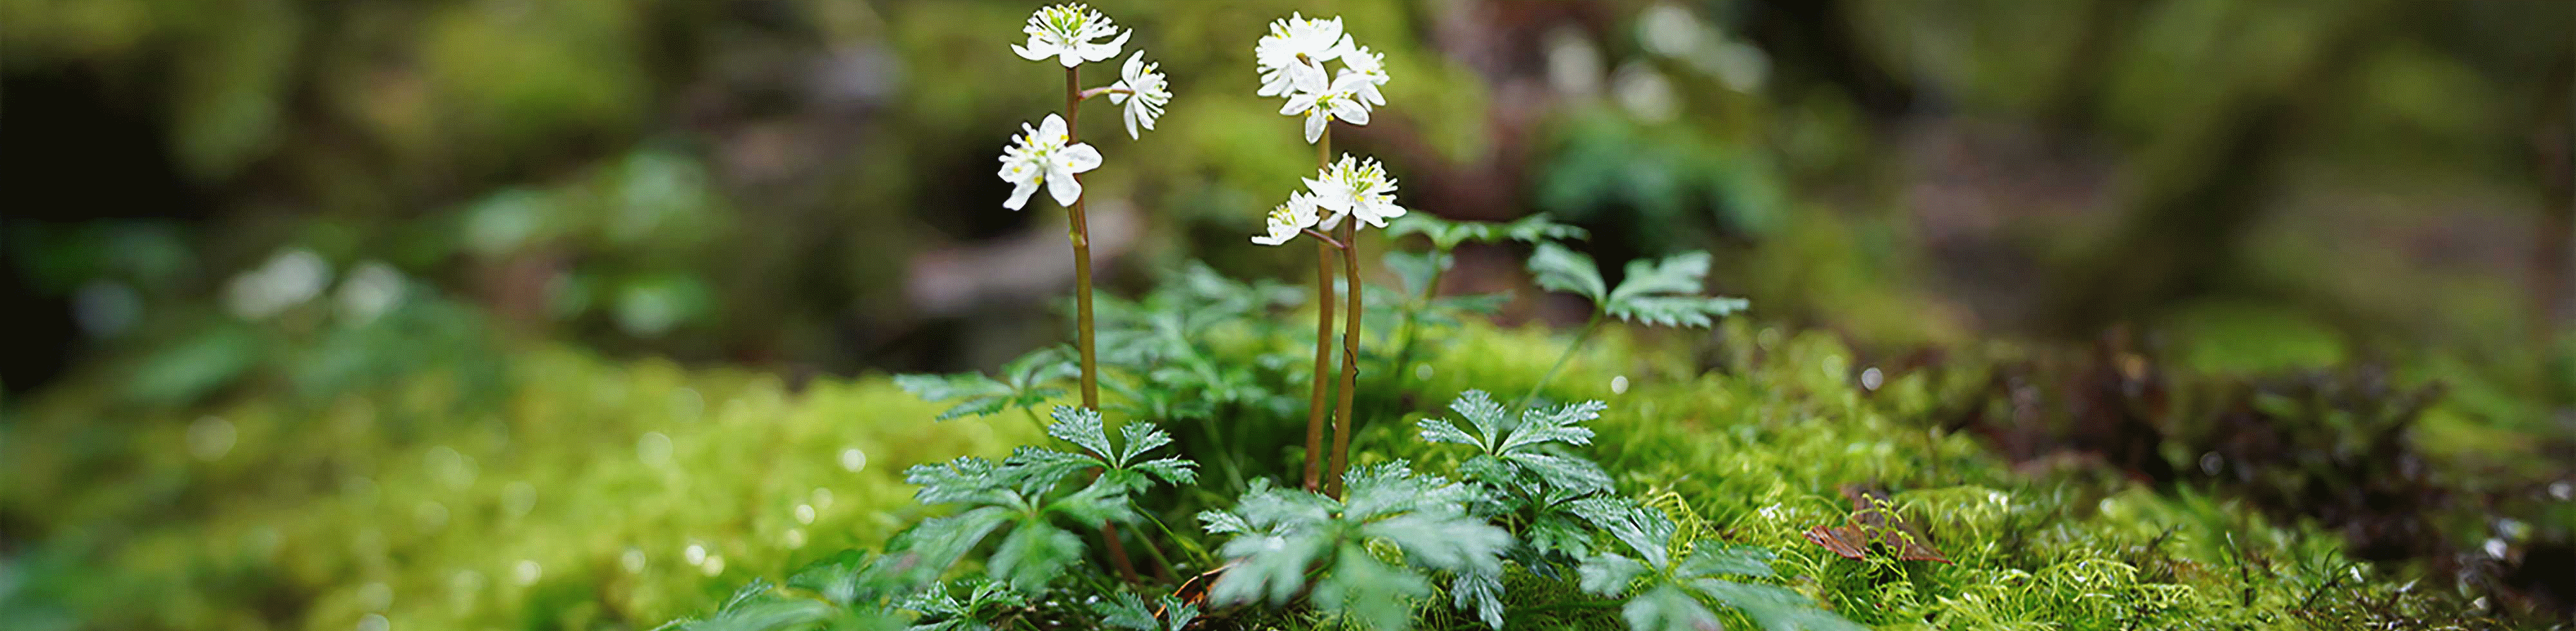 Vaizdas, kuriame rodoma sufokusuota maža gėlė ant akmens miške, o prieš ją ir už jos – didelis suliejimas